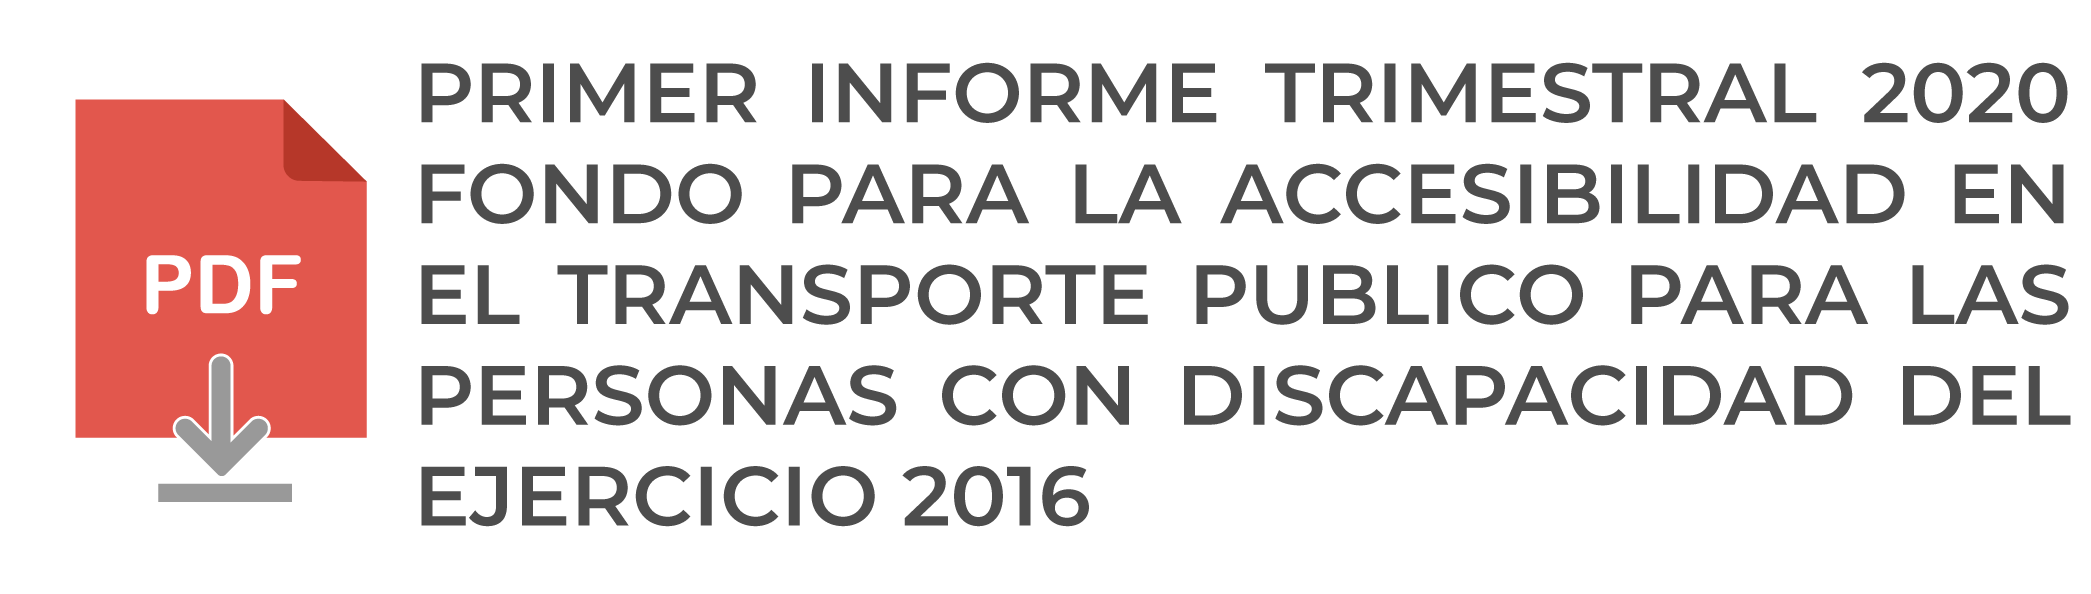 PRIMER-INFORME-TRIMESTRAL-2020--FONDO-PARA-LA-ACCESIBILIDAD-EN-EL-TRANSPORTE-PUBLICO-PARA-LAS-PERSONAS-CON-DISCAPACIDAD-DEL-EJERCICIO-2016.png